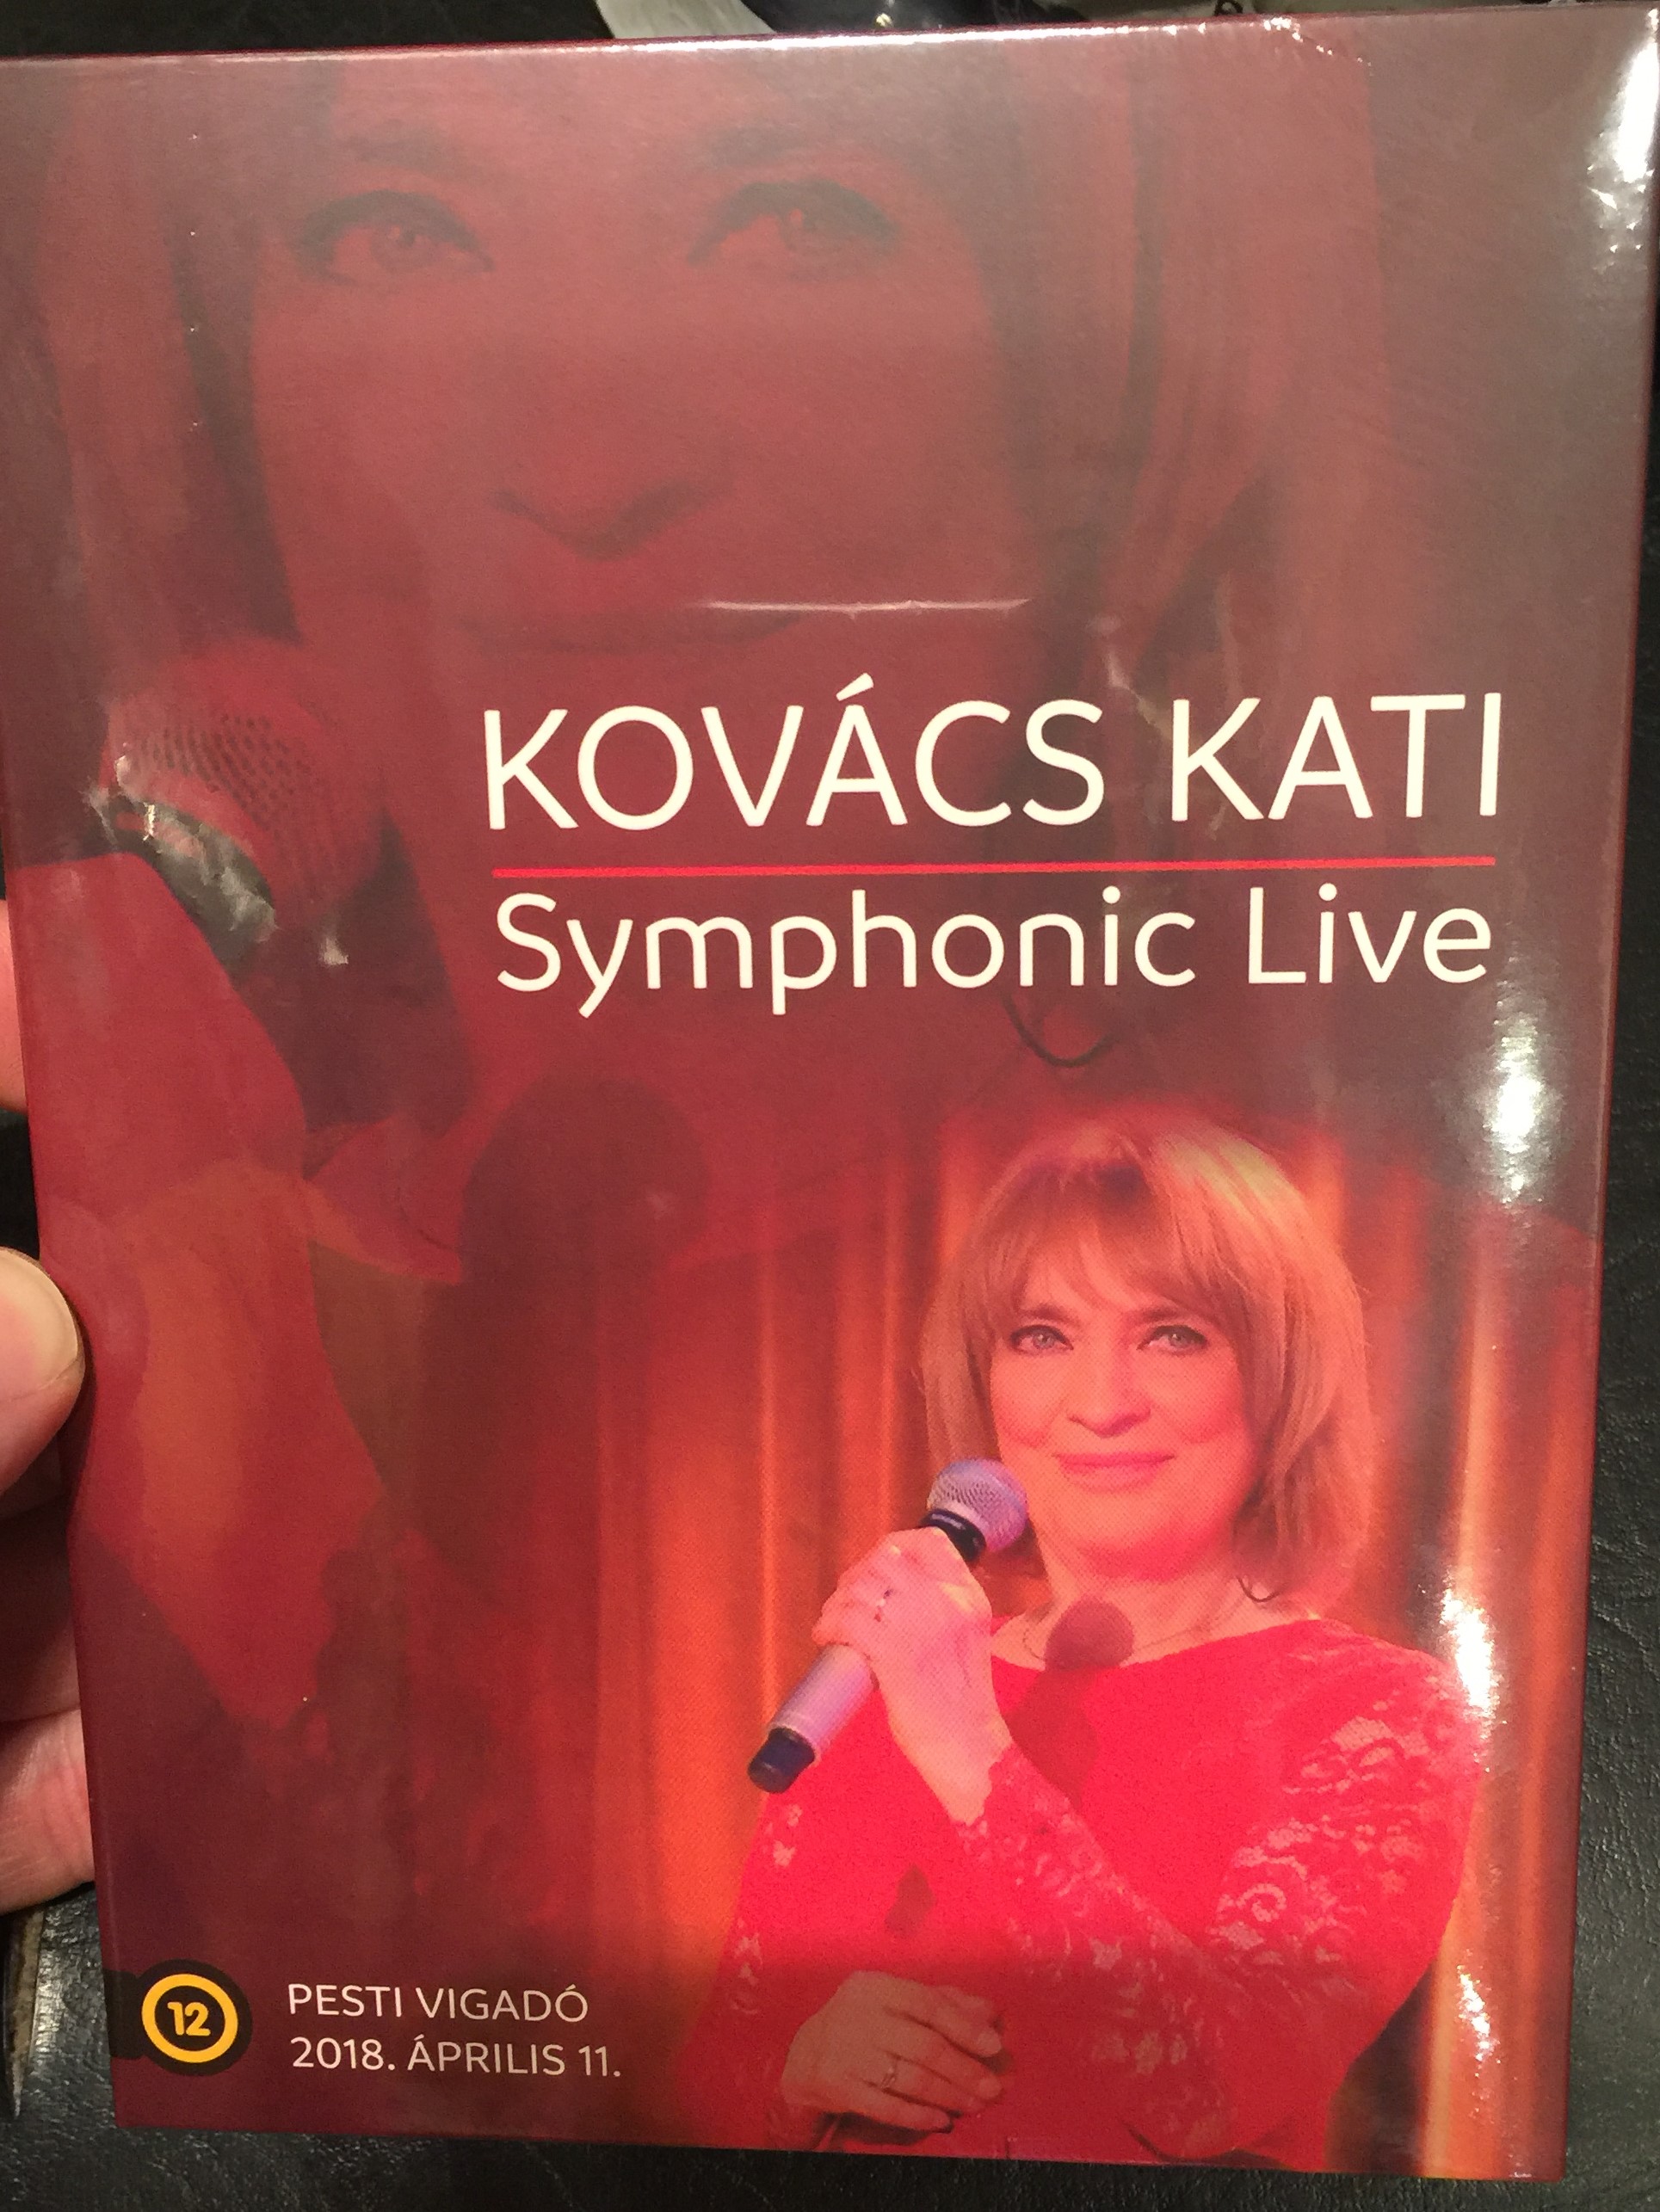 kov-cs-kati-symphonic-live-1-.jpg